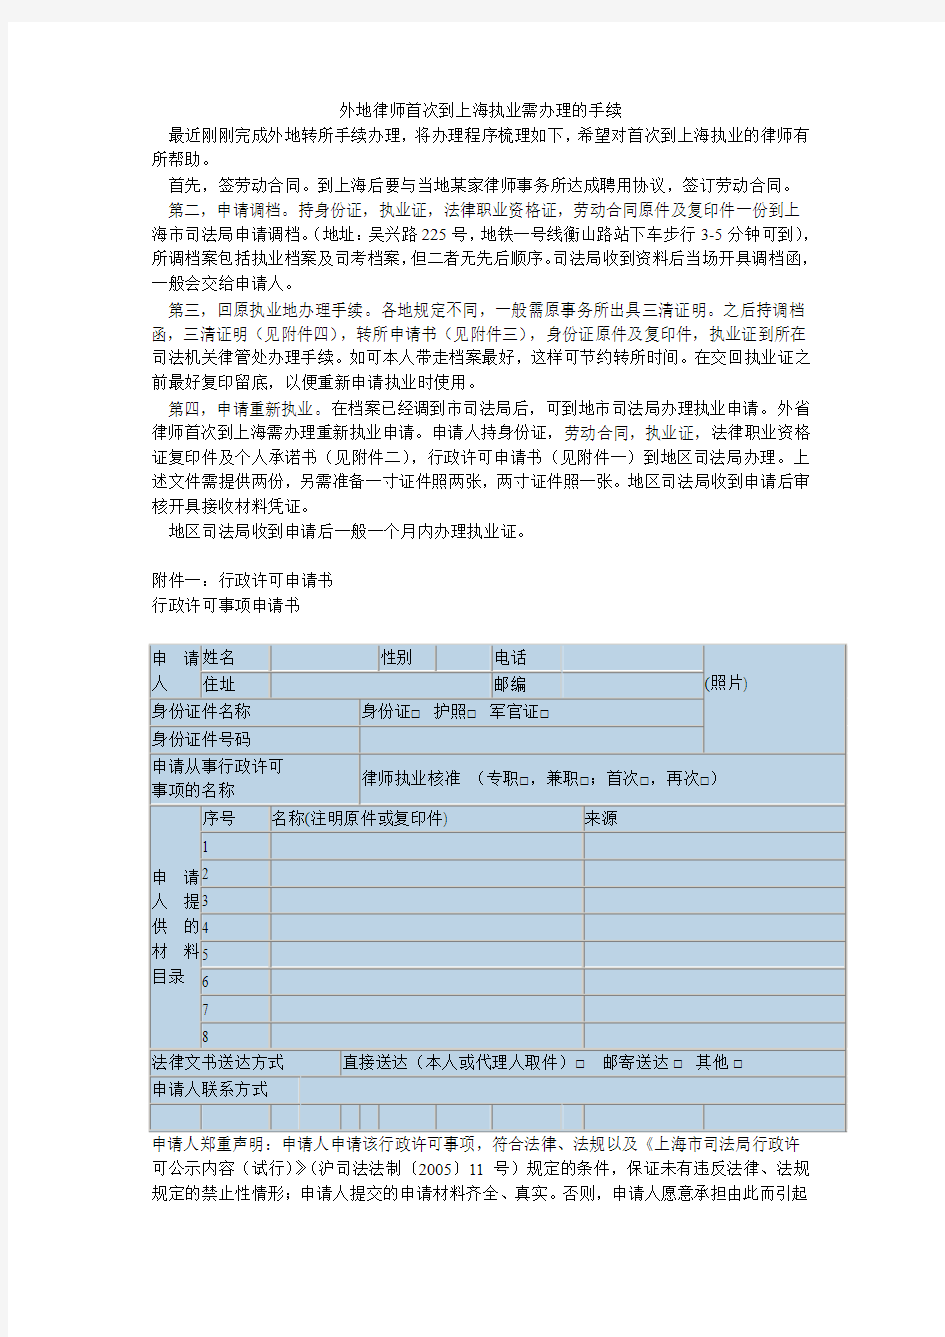 外地律师首次到上海执业需办理的手续